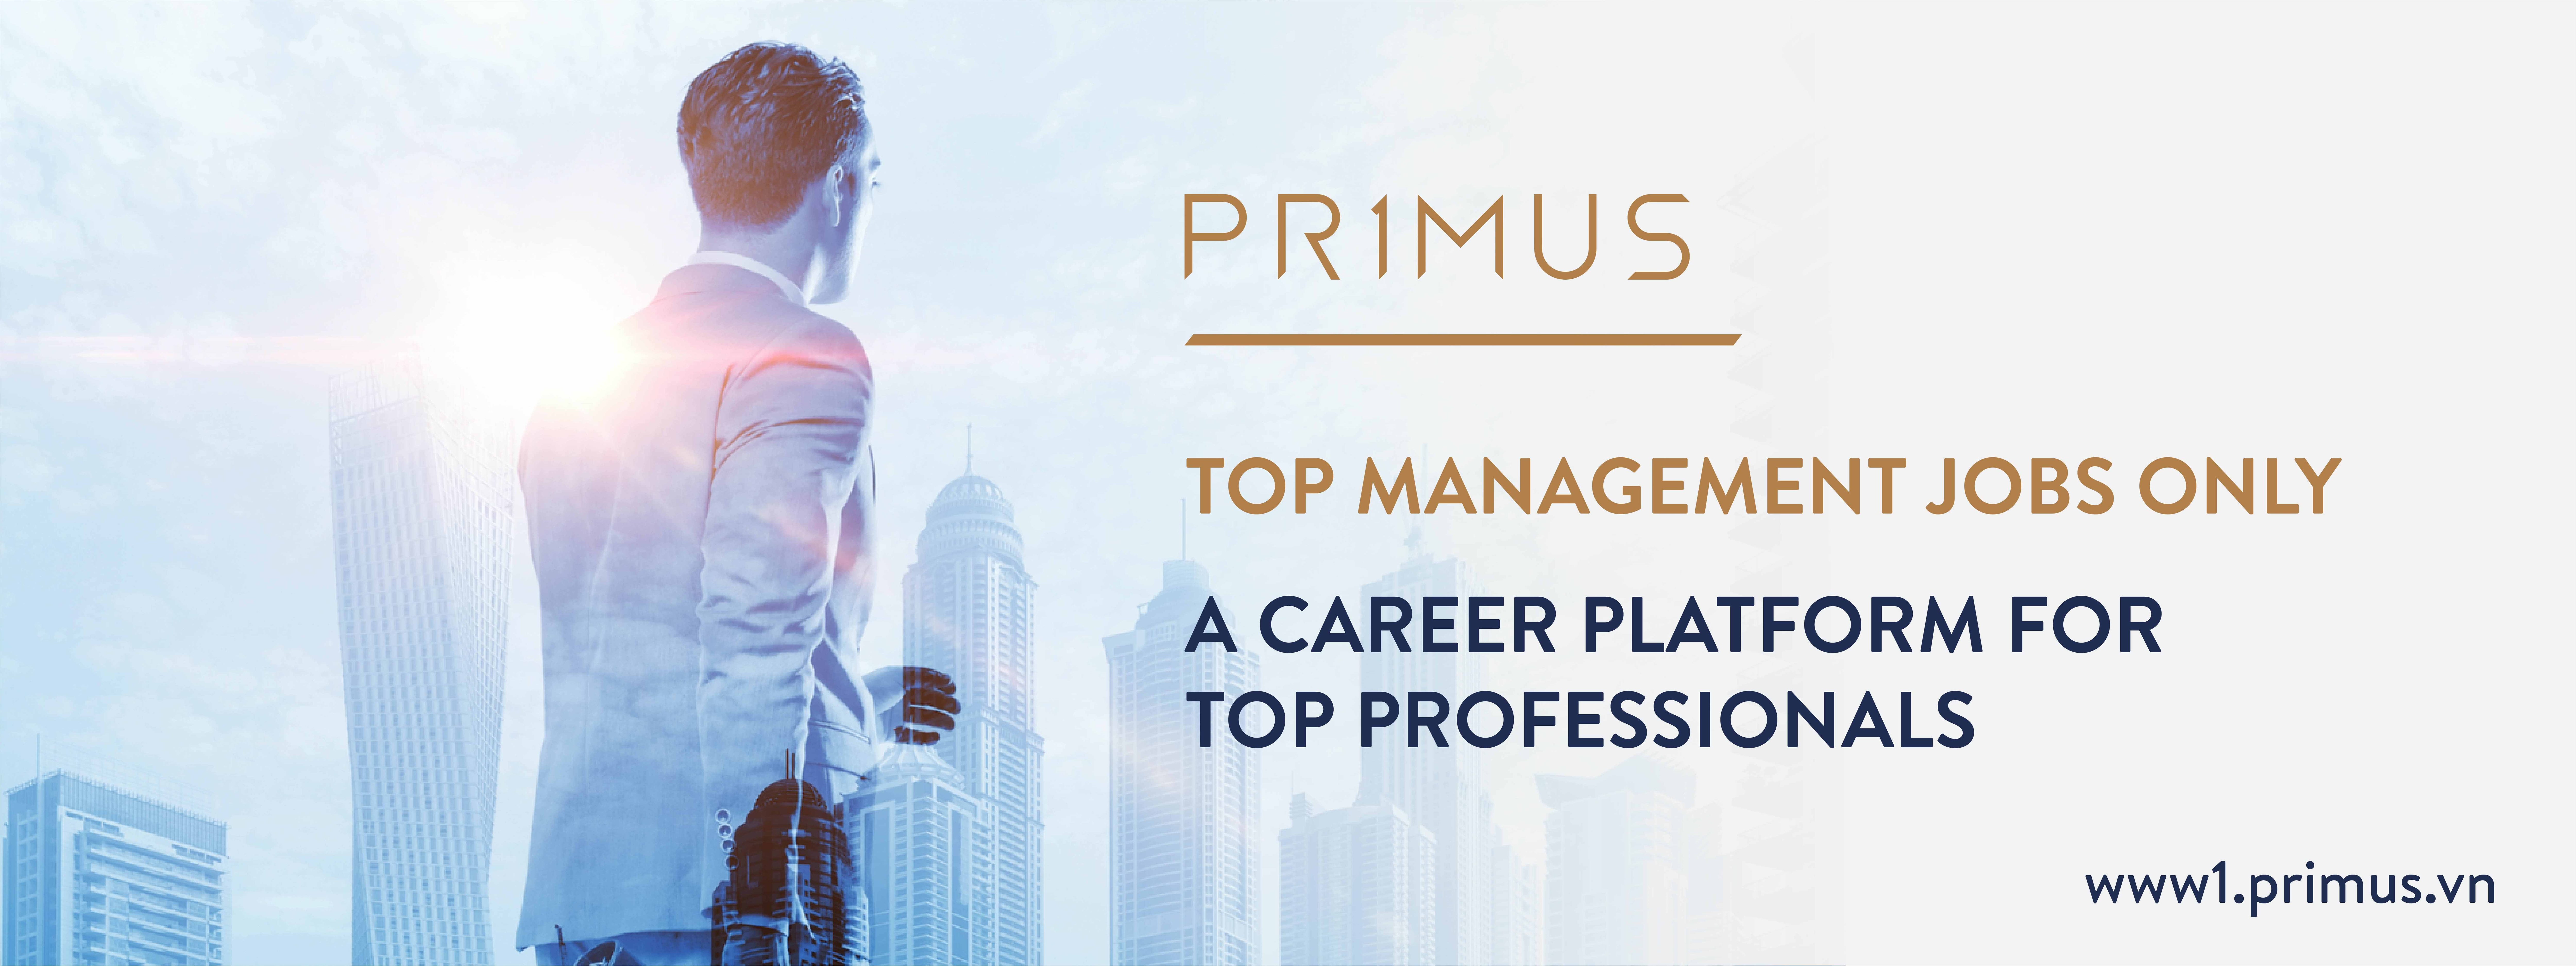 Jobs at Primus's Client - Công Ty Cổ Phần Giáo Dục American Study